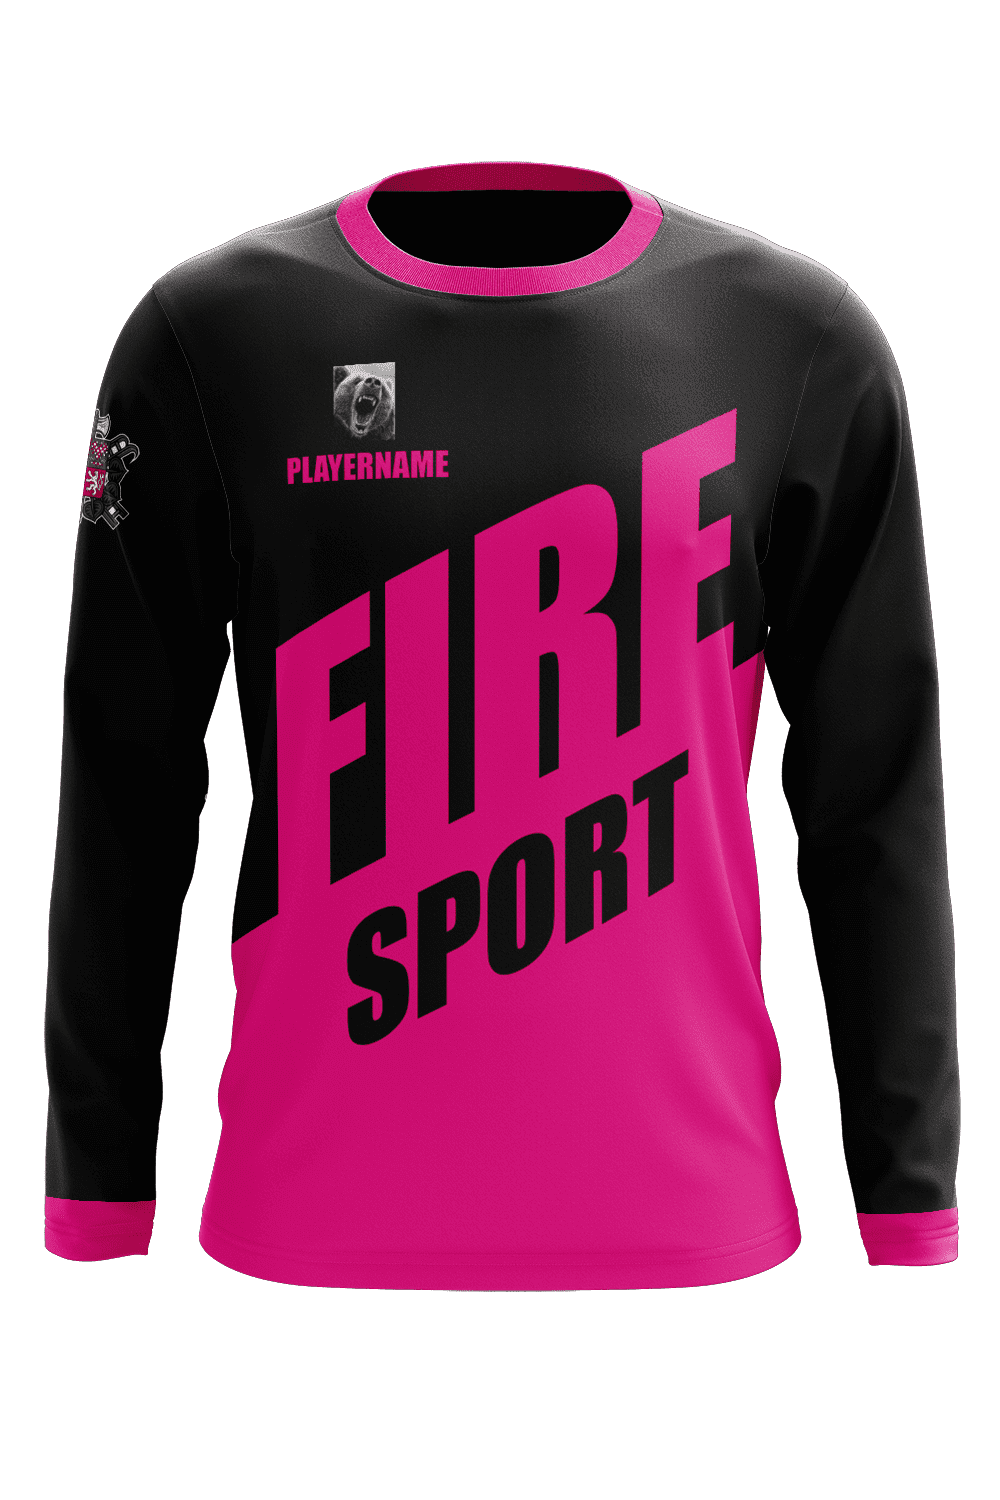 Fire Flames Jersey Template Design 159 t-shirt, Soccer, Football, E-sport,  Volleyball jersey, basketball jersey, futsal jersey. 12825581 Vector Art at  Vecteezy